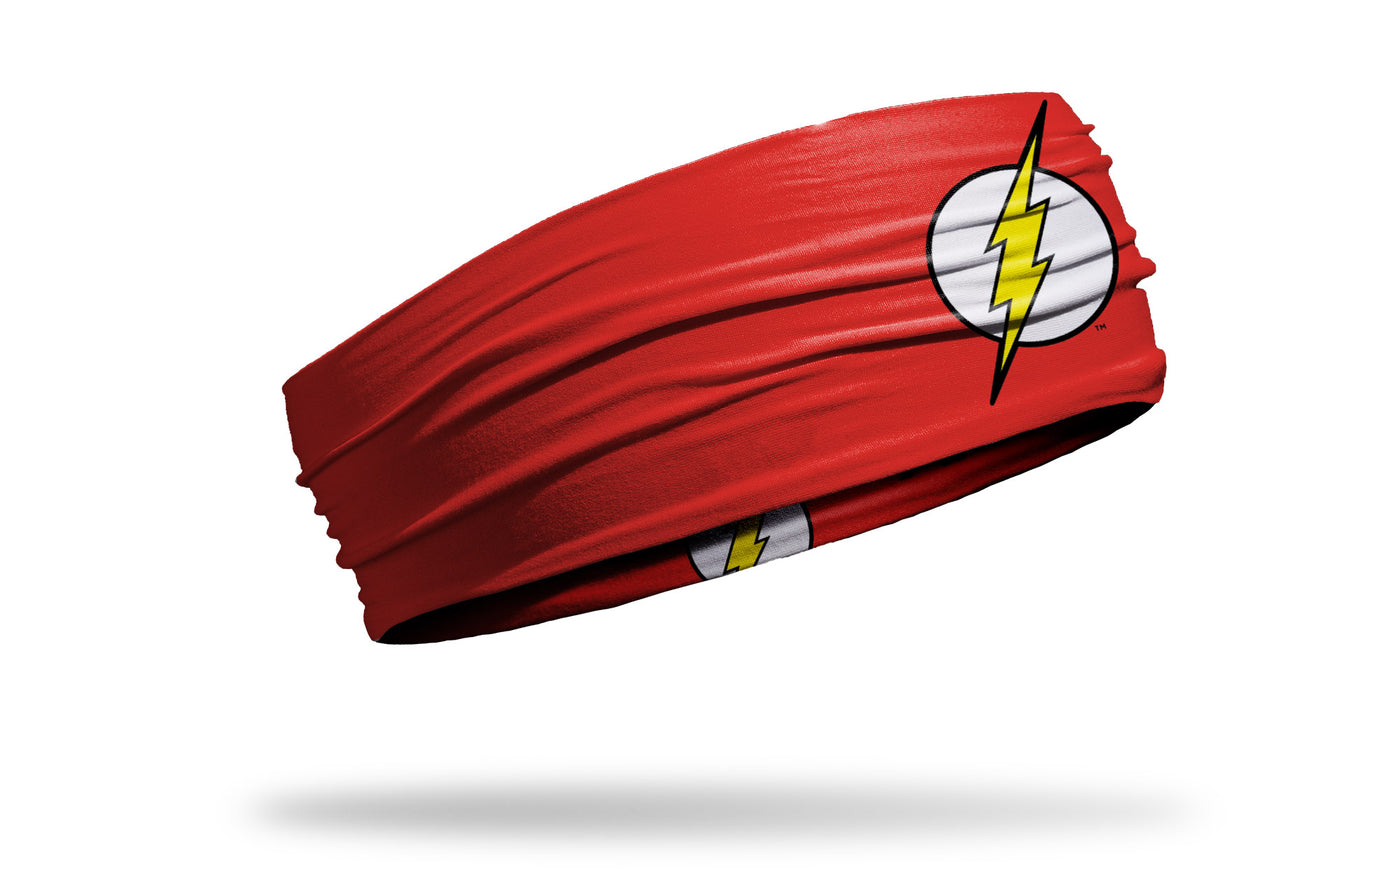 cool flash logos